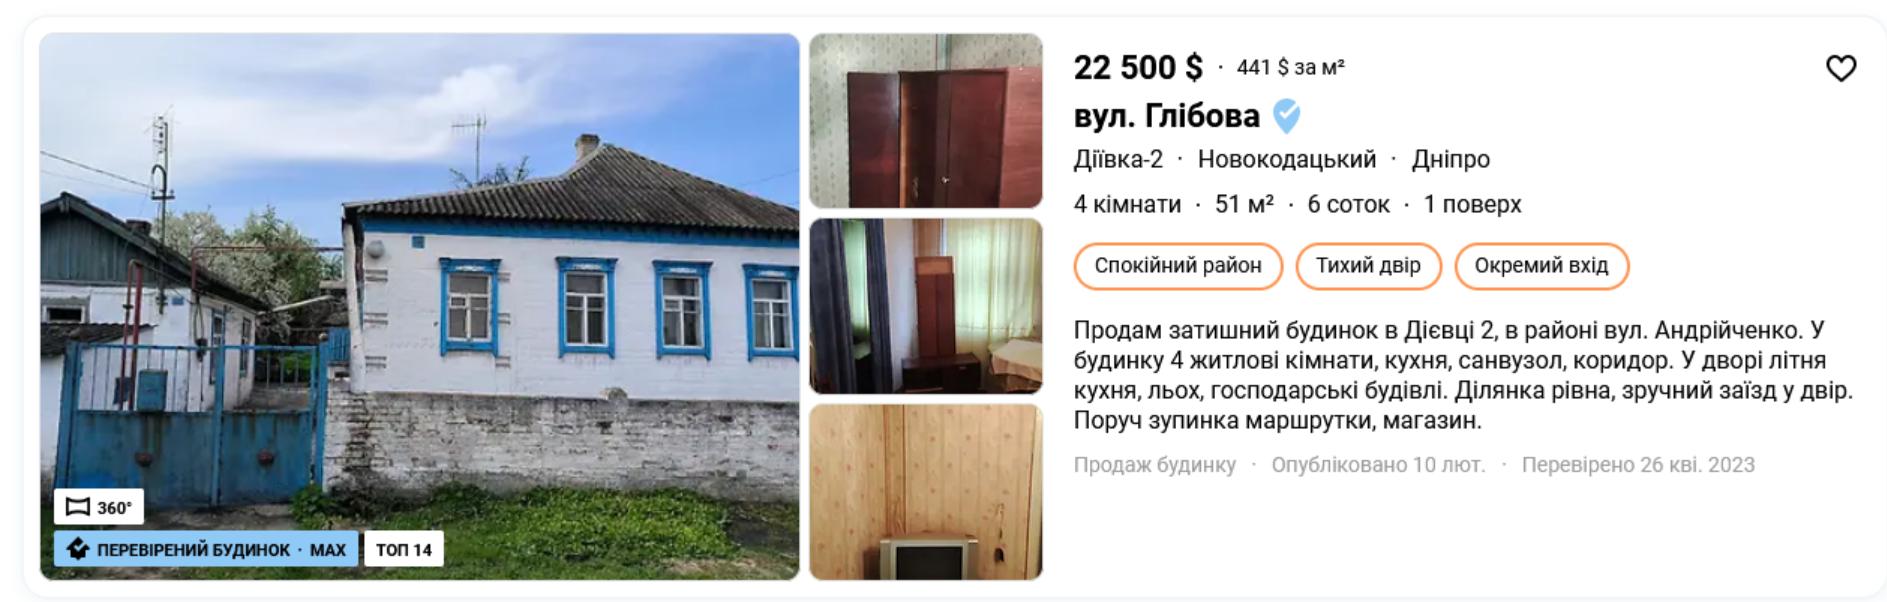 дом в Новокодацком районе Днепра